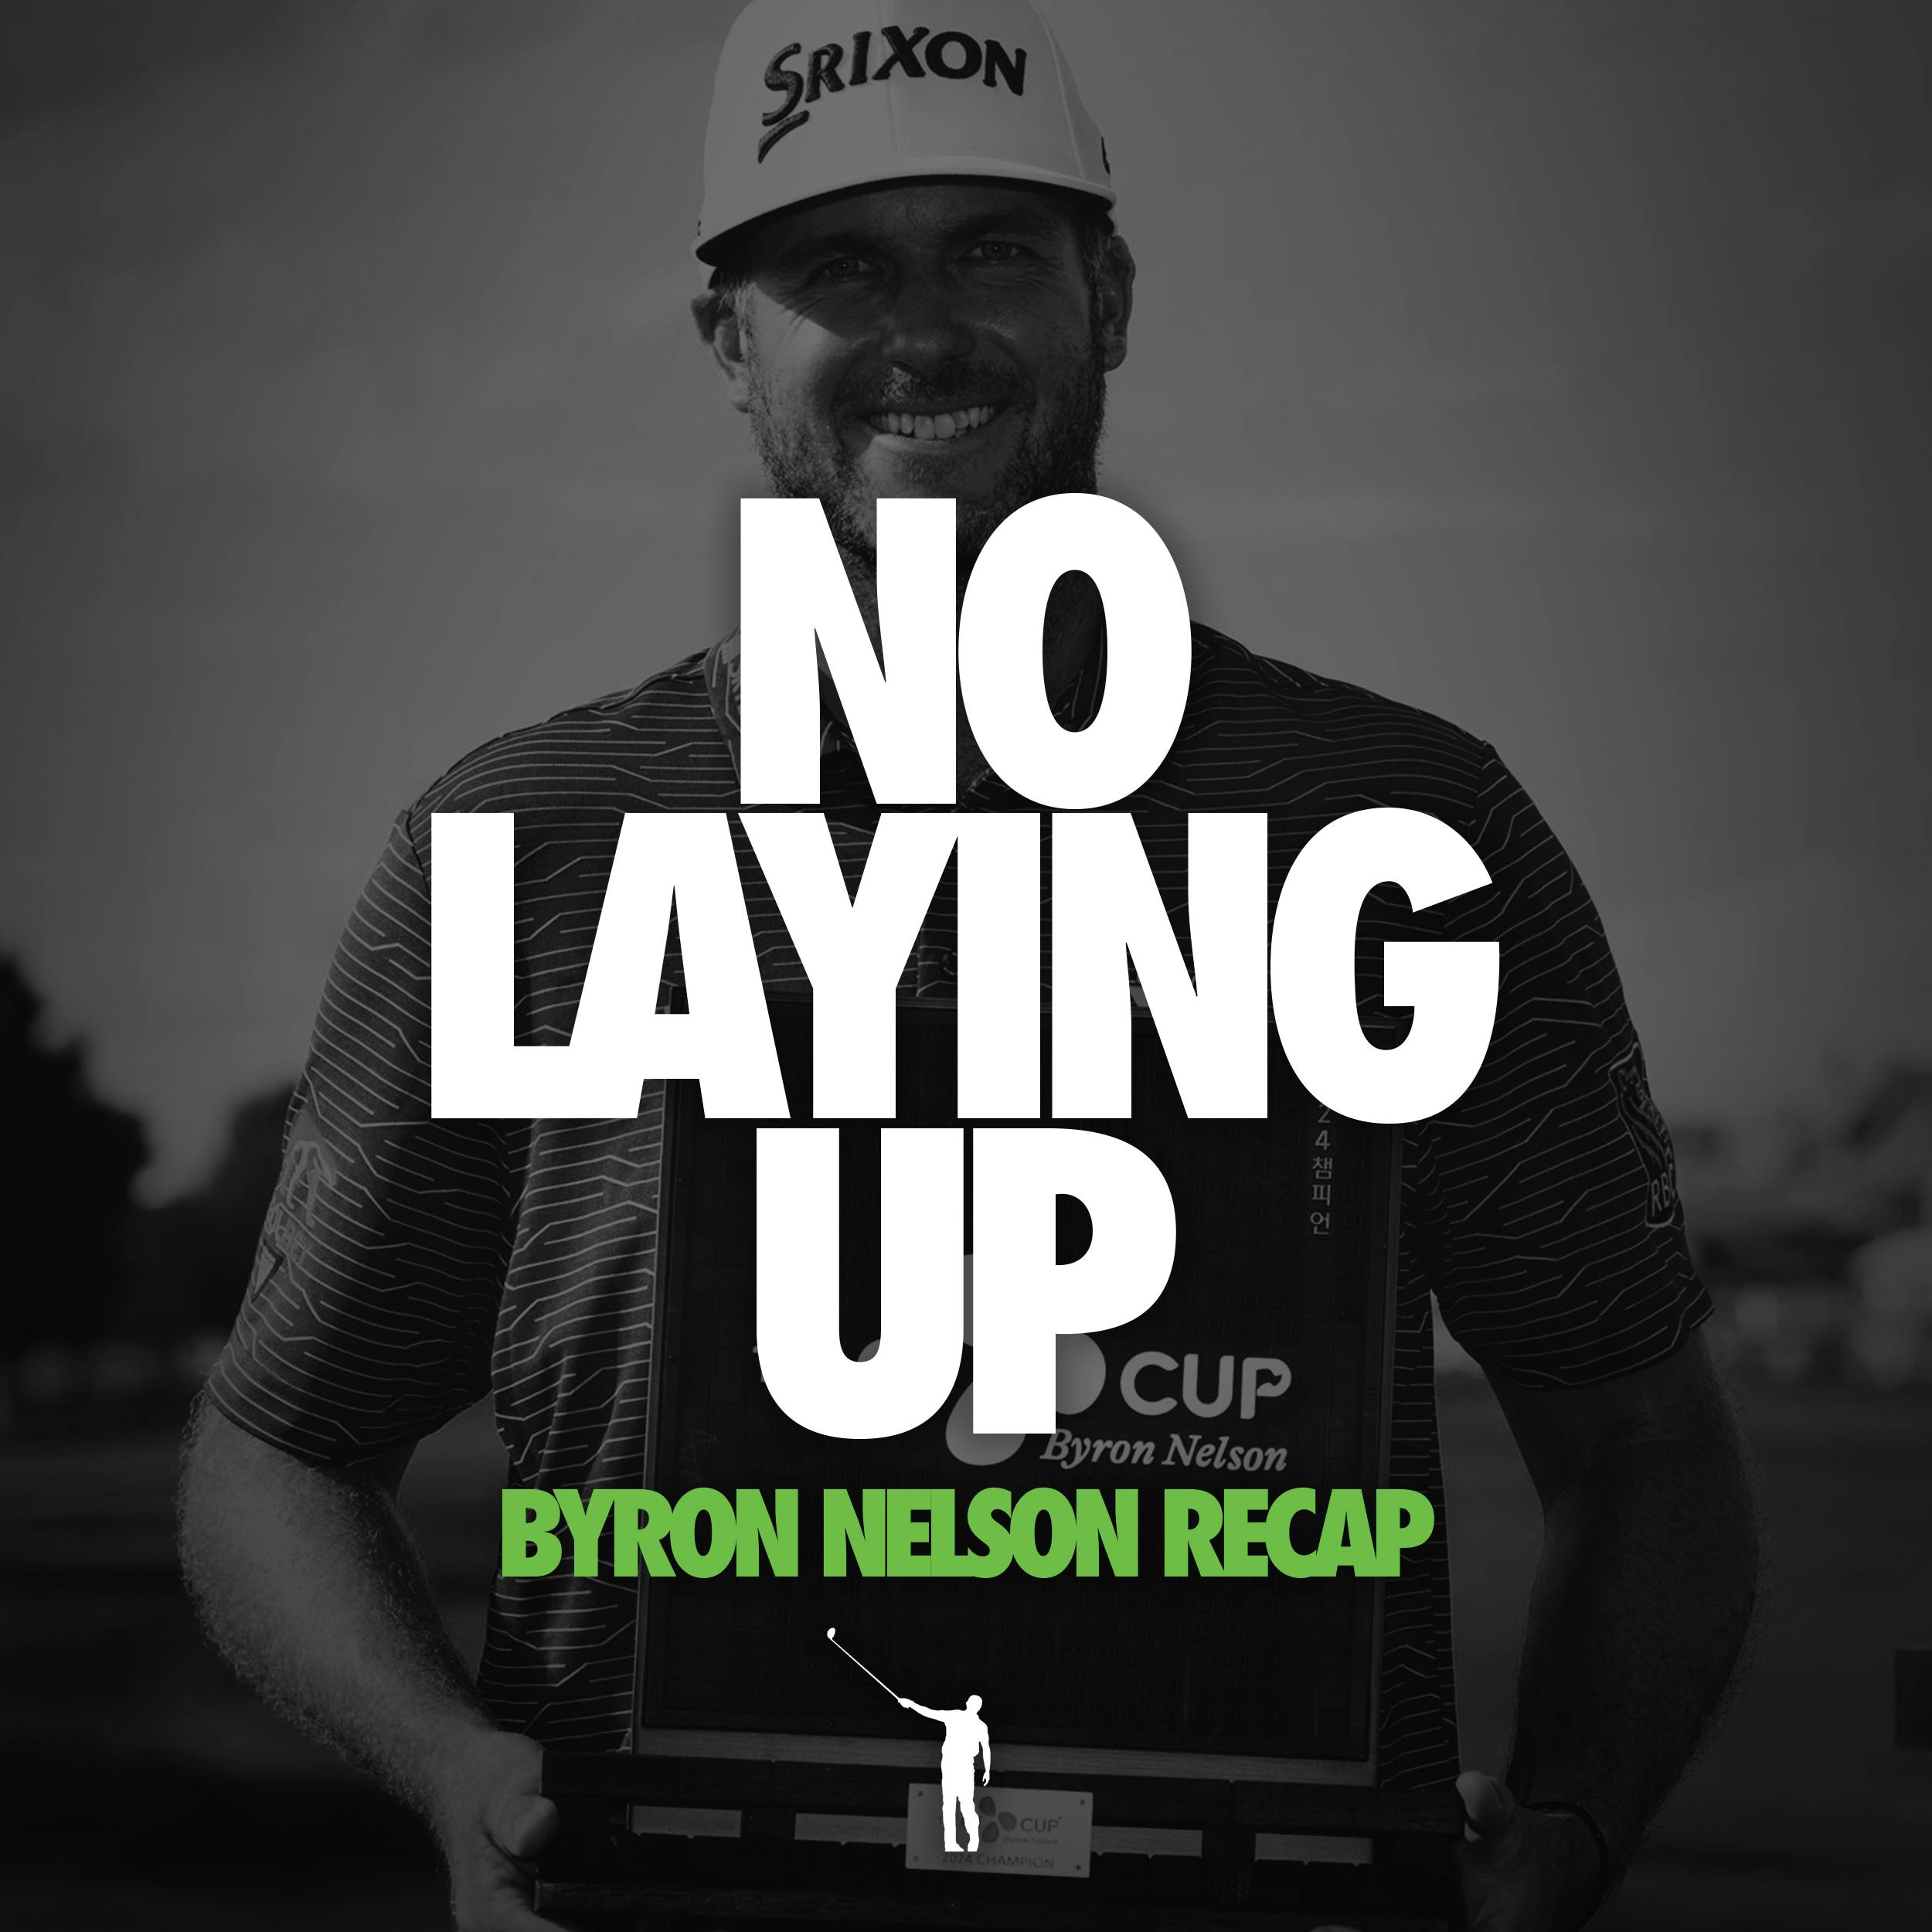 830 - Byron Nelson and LIV Singapore Recaps + Listener Mailbag